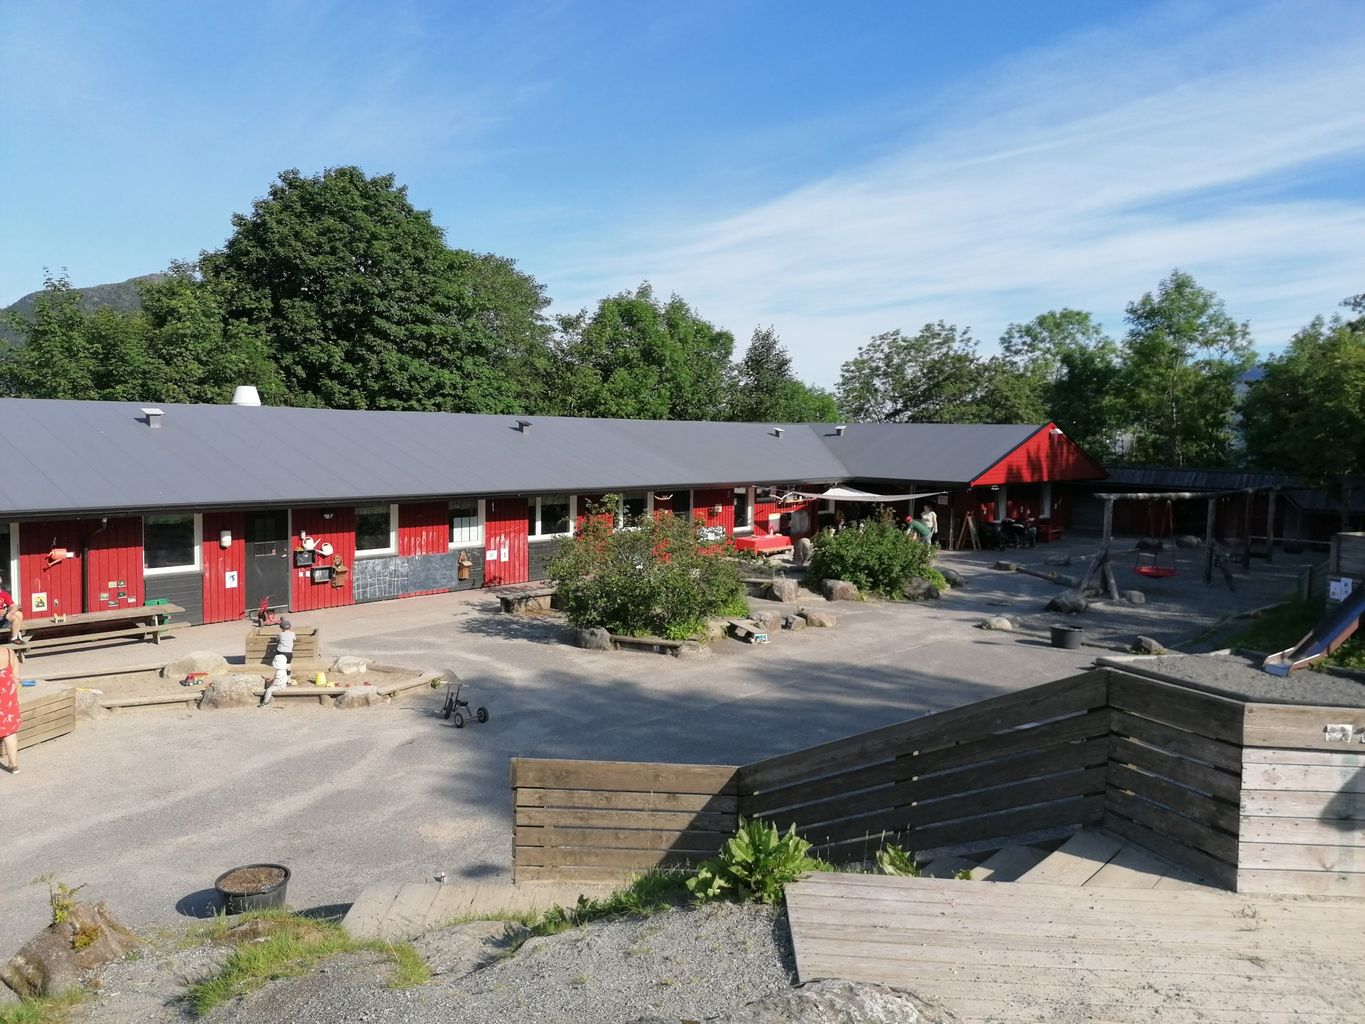 The facade and outdoor area of Sammen Oppigard Kindergarten.